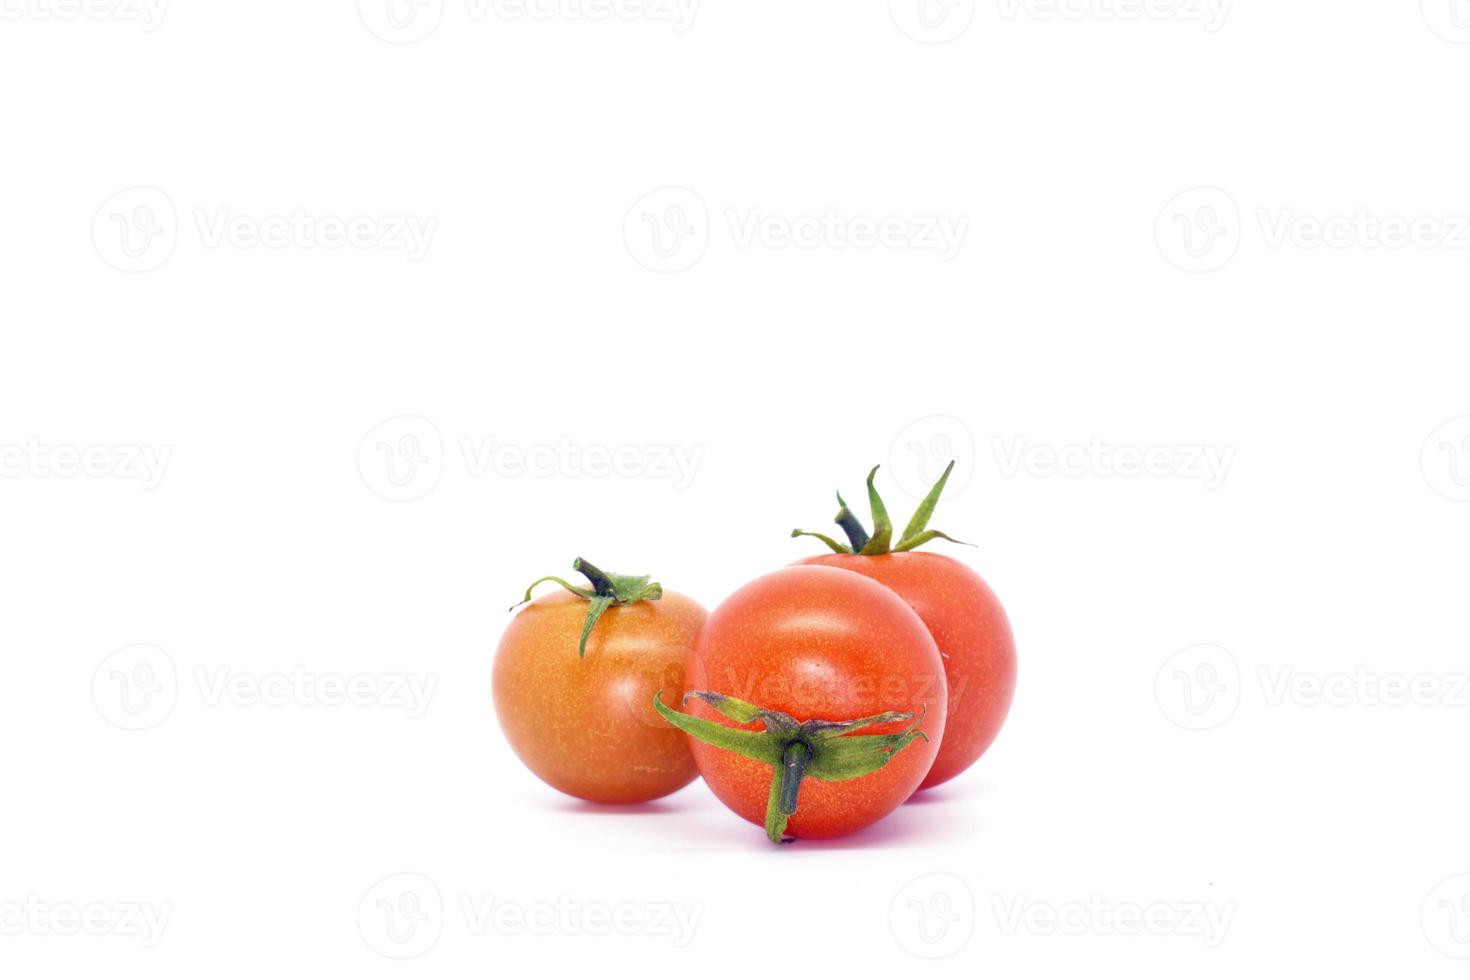 grappolo italiano di pomodori. tre pomodori piccoli e succosi. foto